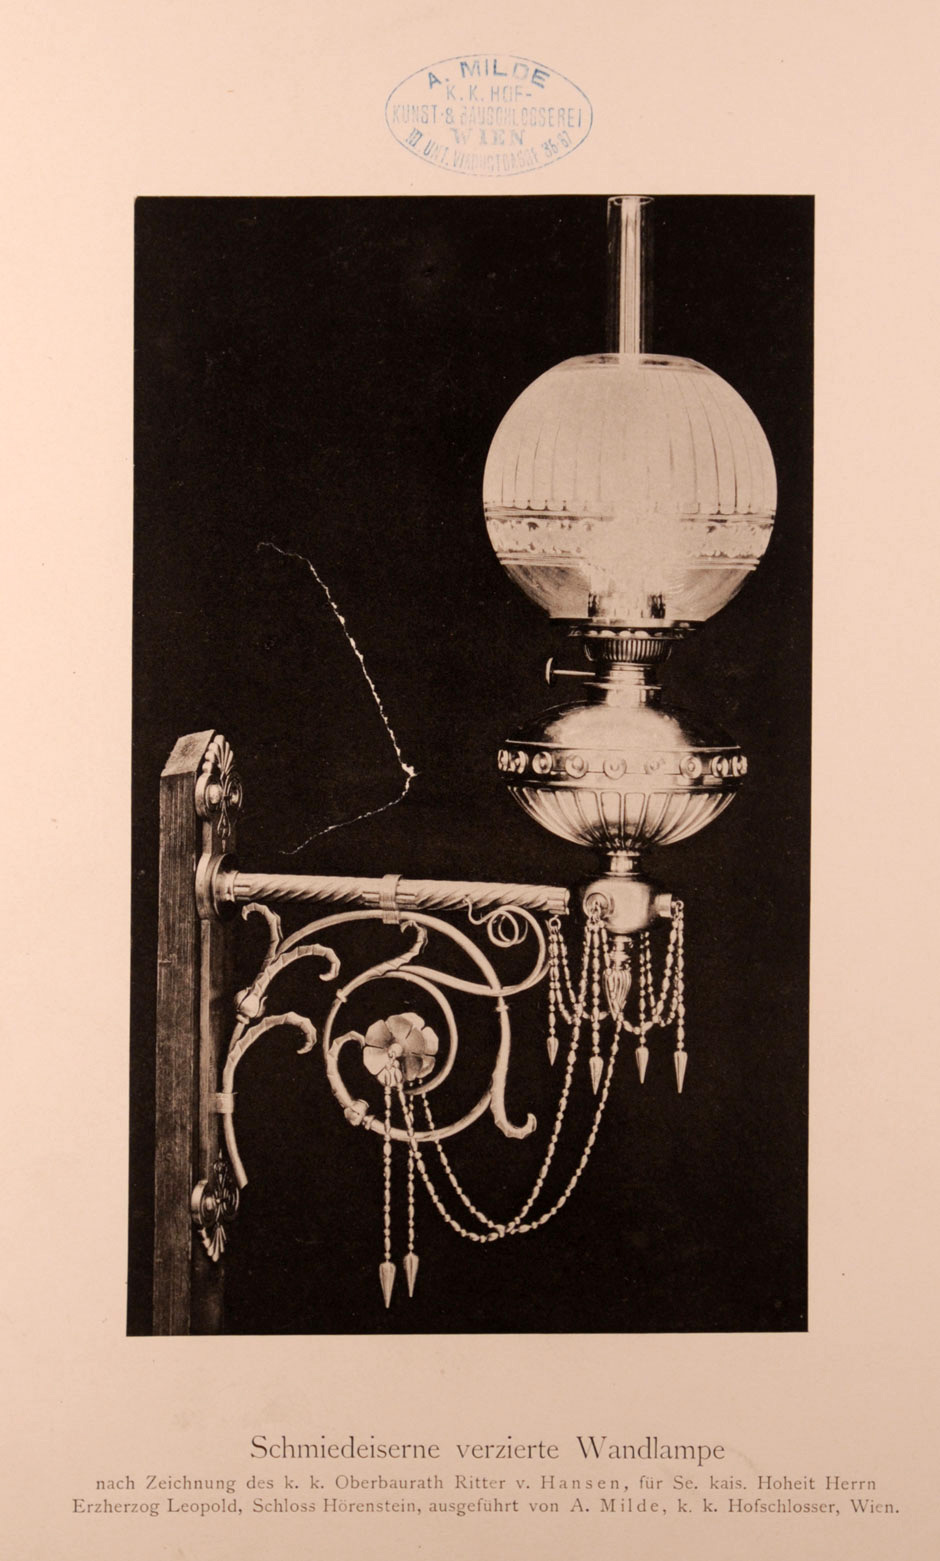 Archivbild: Schloß Hernstein, Schmiedeeiserne verzierte Wandlampe